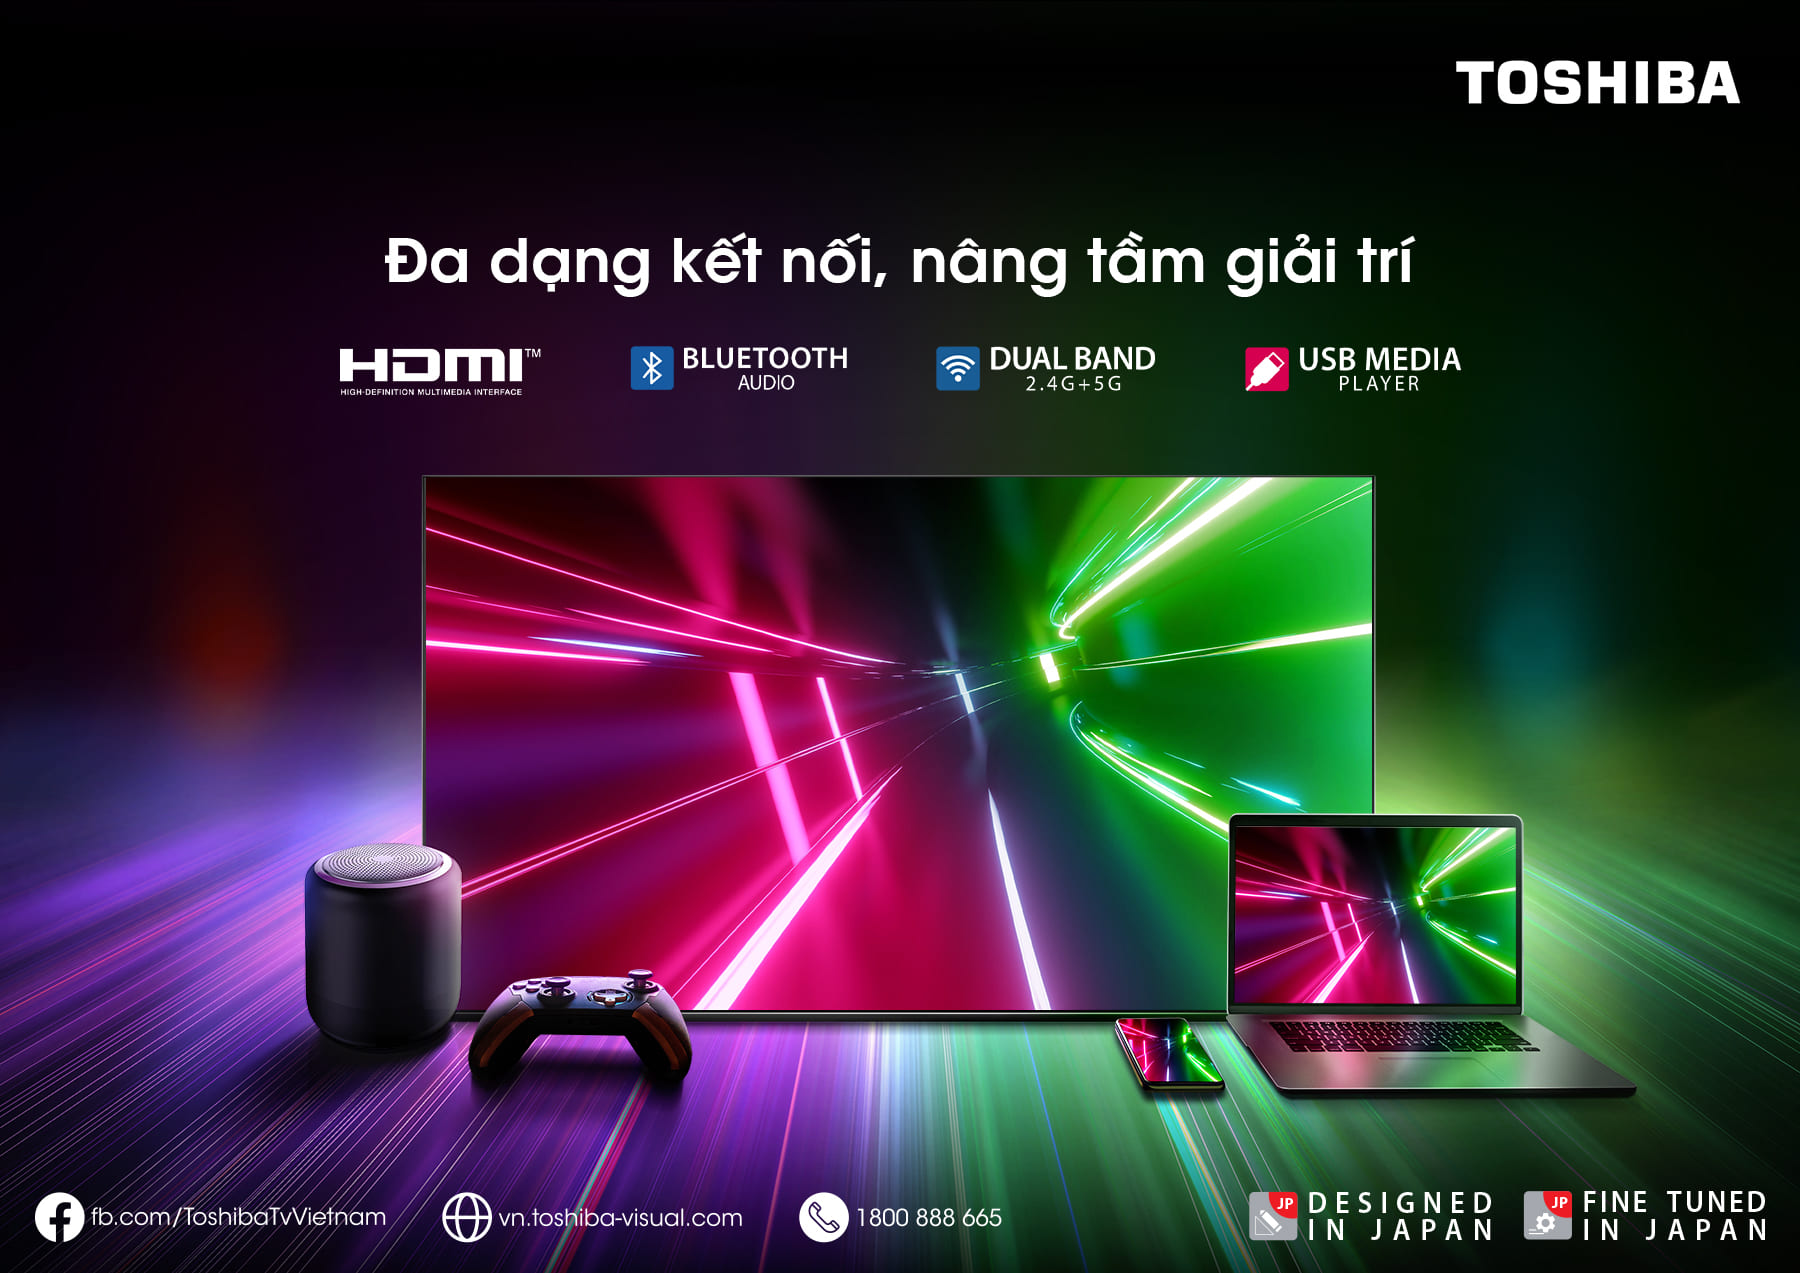 Google Tivi QLED TOSHIBA 55 inch 55M550LP, Smart TV Màn Hình Quantum Dot 4K UHD - Loa 49W - Miễn...